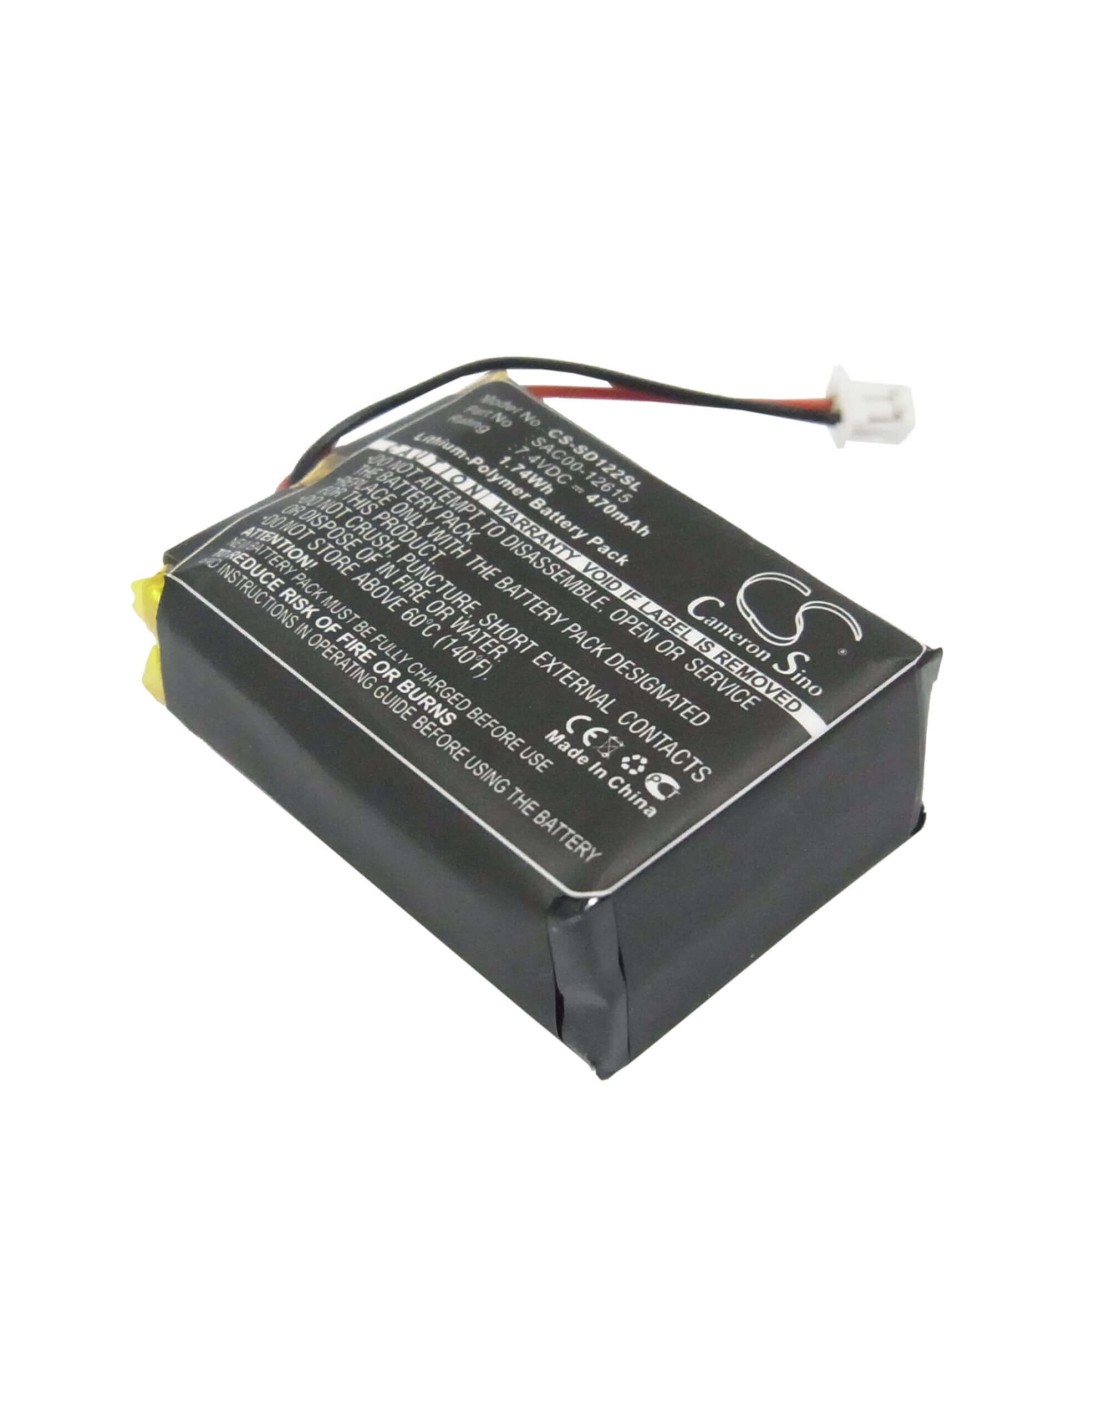 Battery for Sportdog Sd-1225 Transmitter, Sdt54-13923, Sdt54-13923 Handheld Transmitters 7.4V, 470mAh - 3.48Wh